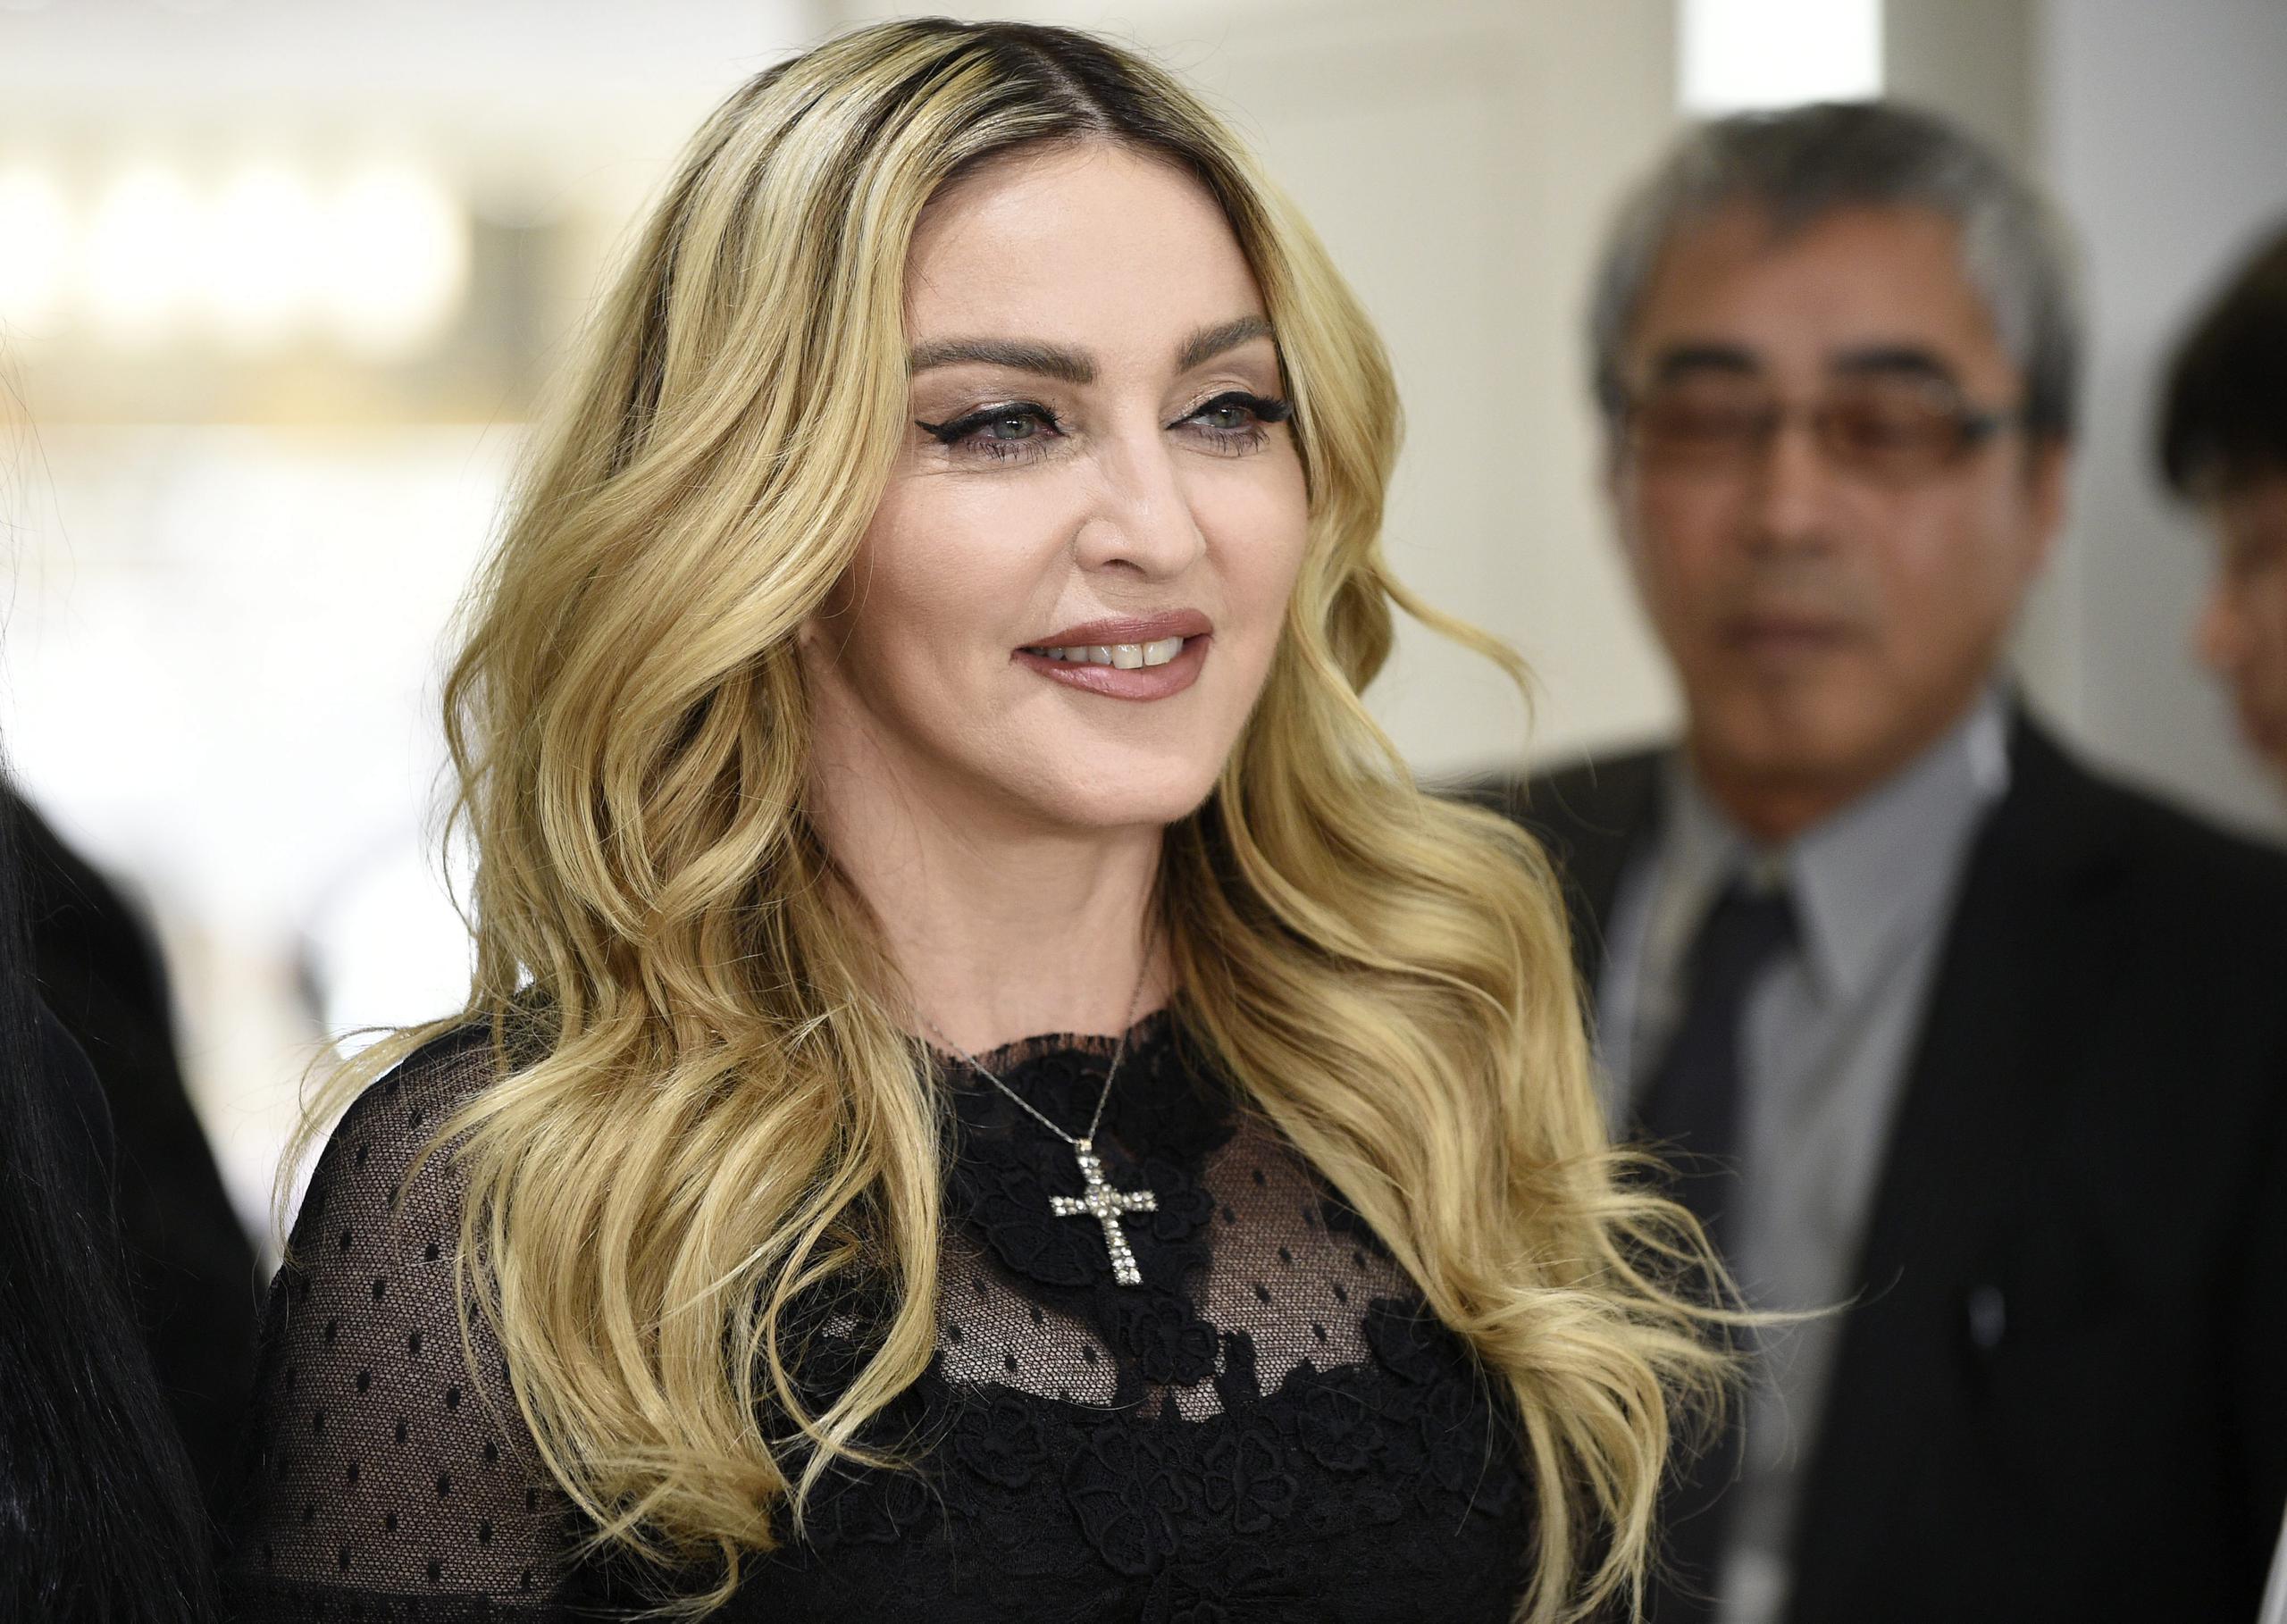 La superestrella del pop Madonna posa durante un evento promocional.